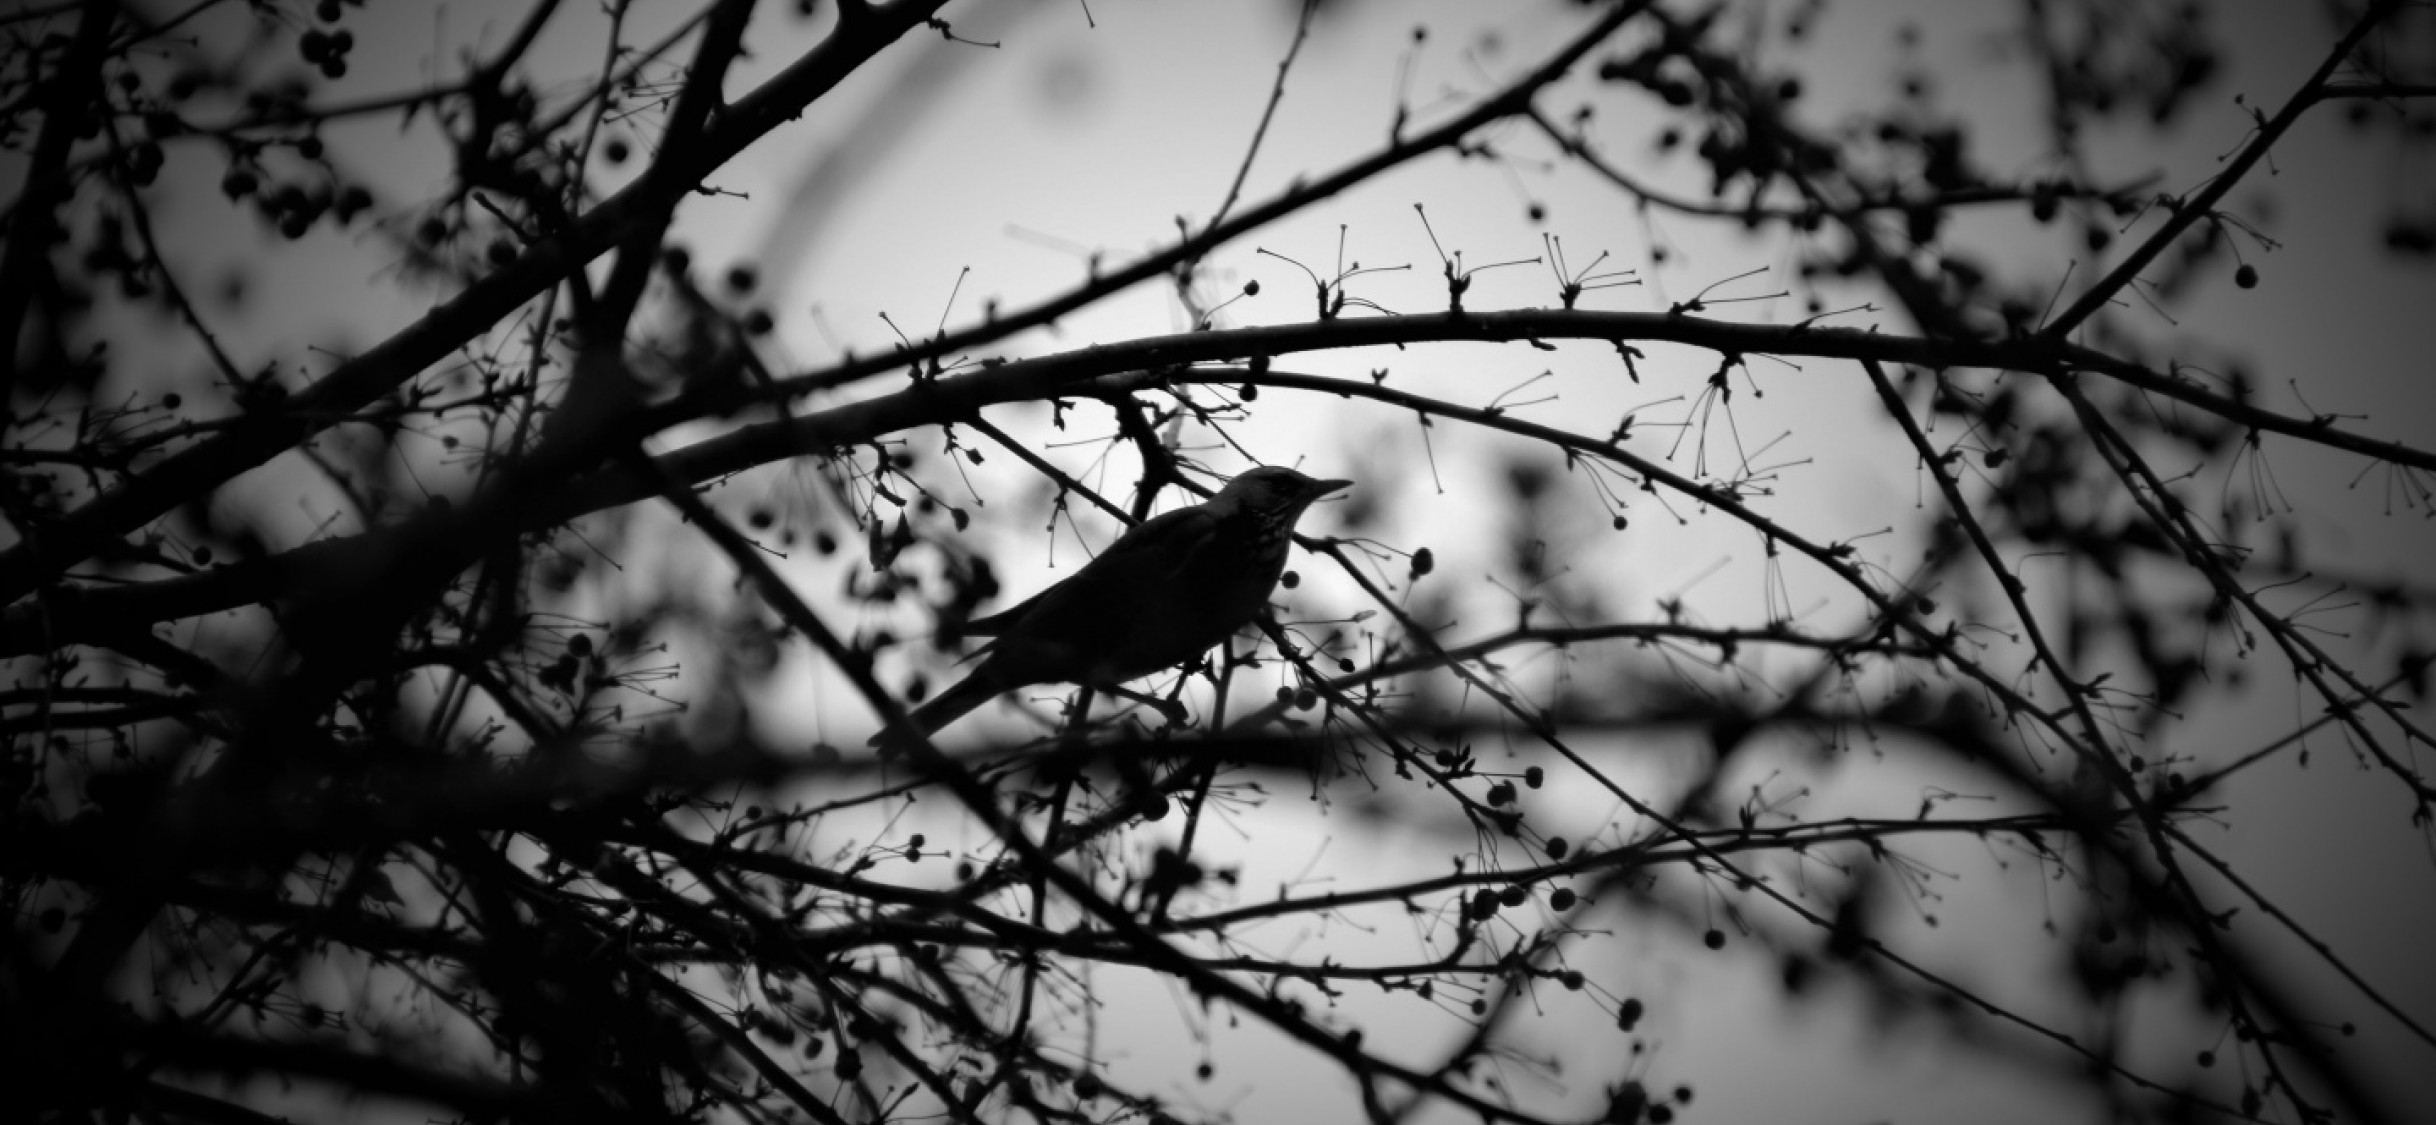 Фото птичек красивых черно-белым. Черная птица с белыми точками. Чёрные птицы сумрак. Птицы черно белые Брянской области.